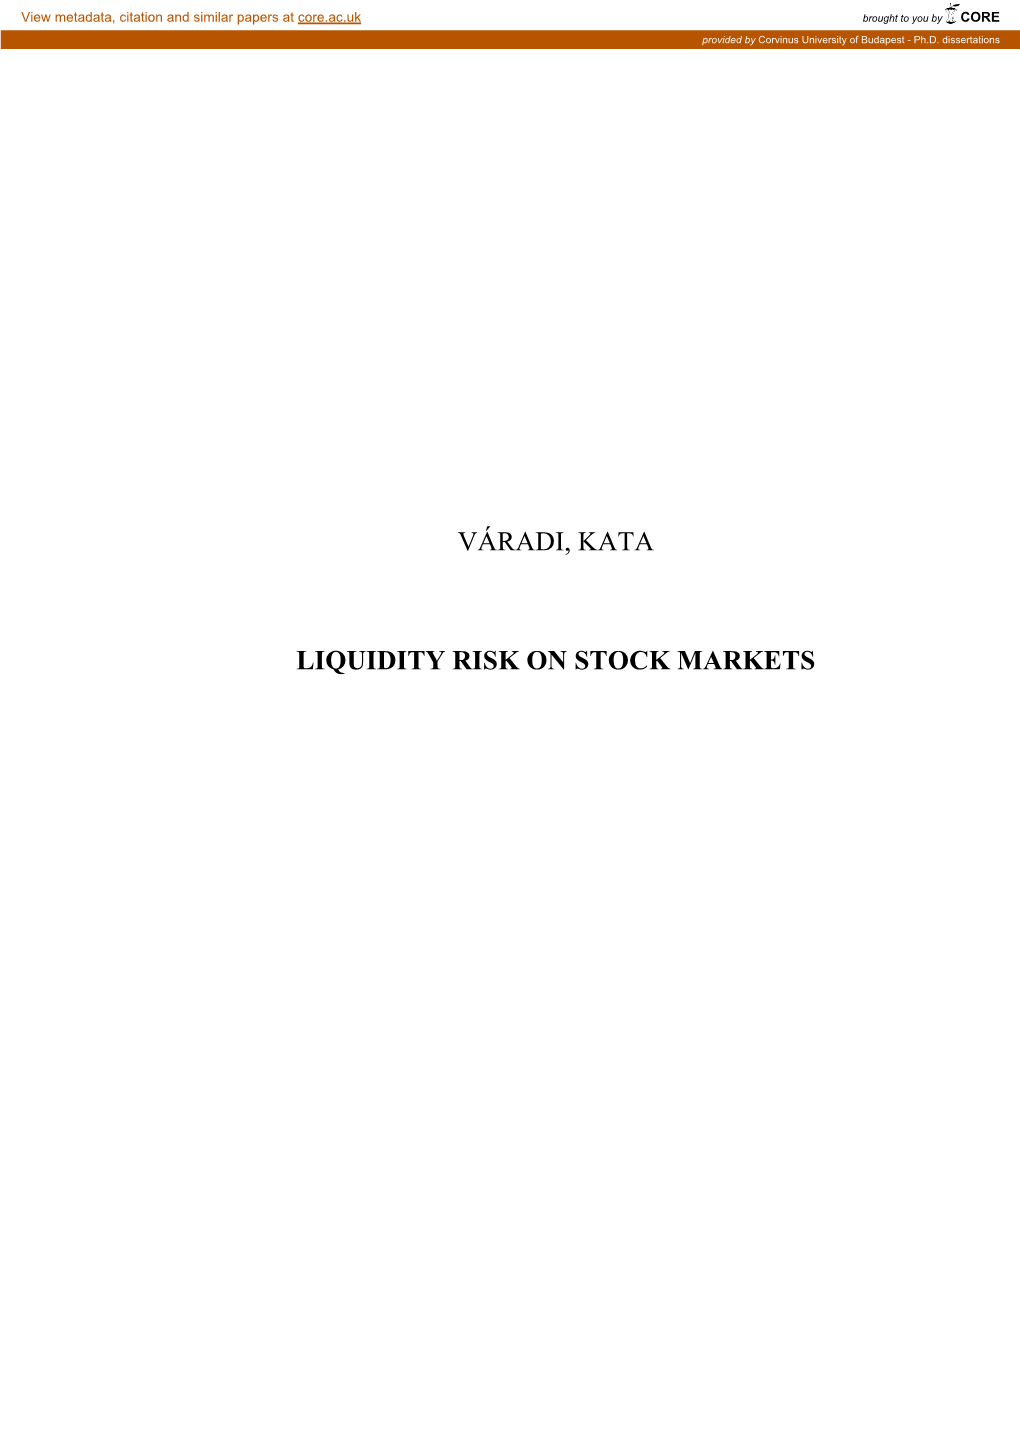 Váradi, Kata Liquidity Risk on Stock Markets